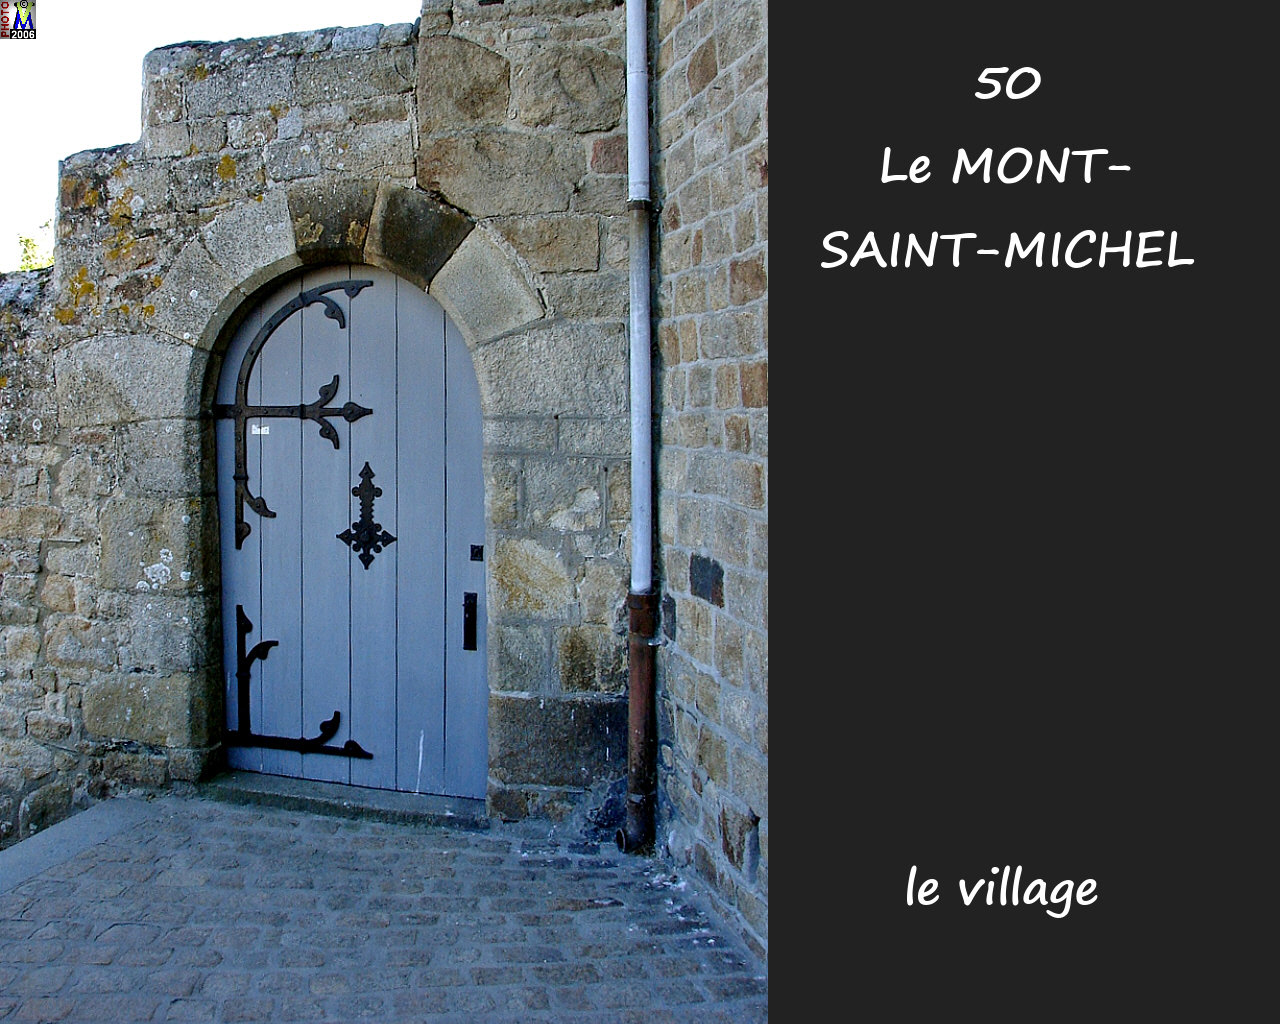 50LE-MONT-ST-MICHEL_village_300.jpg